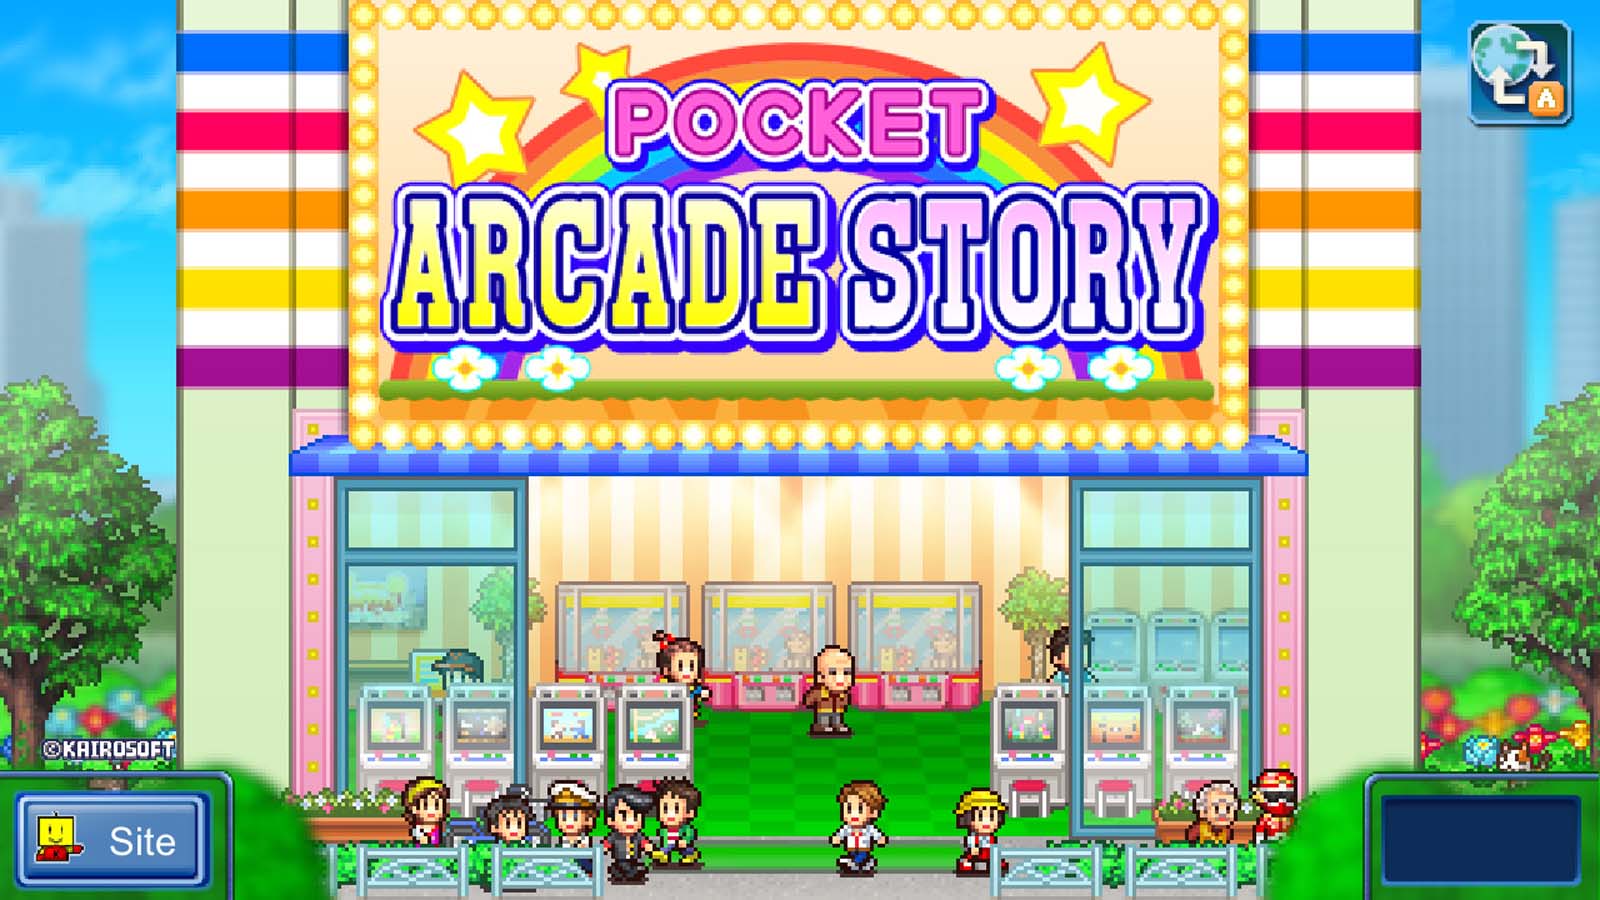 Pocket Arcade Story queda confirmado para el 30 de abril en Nintendo Switch